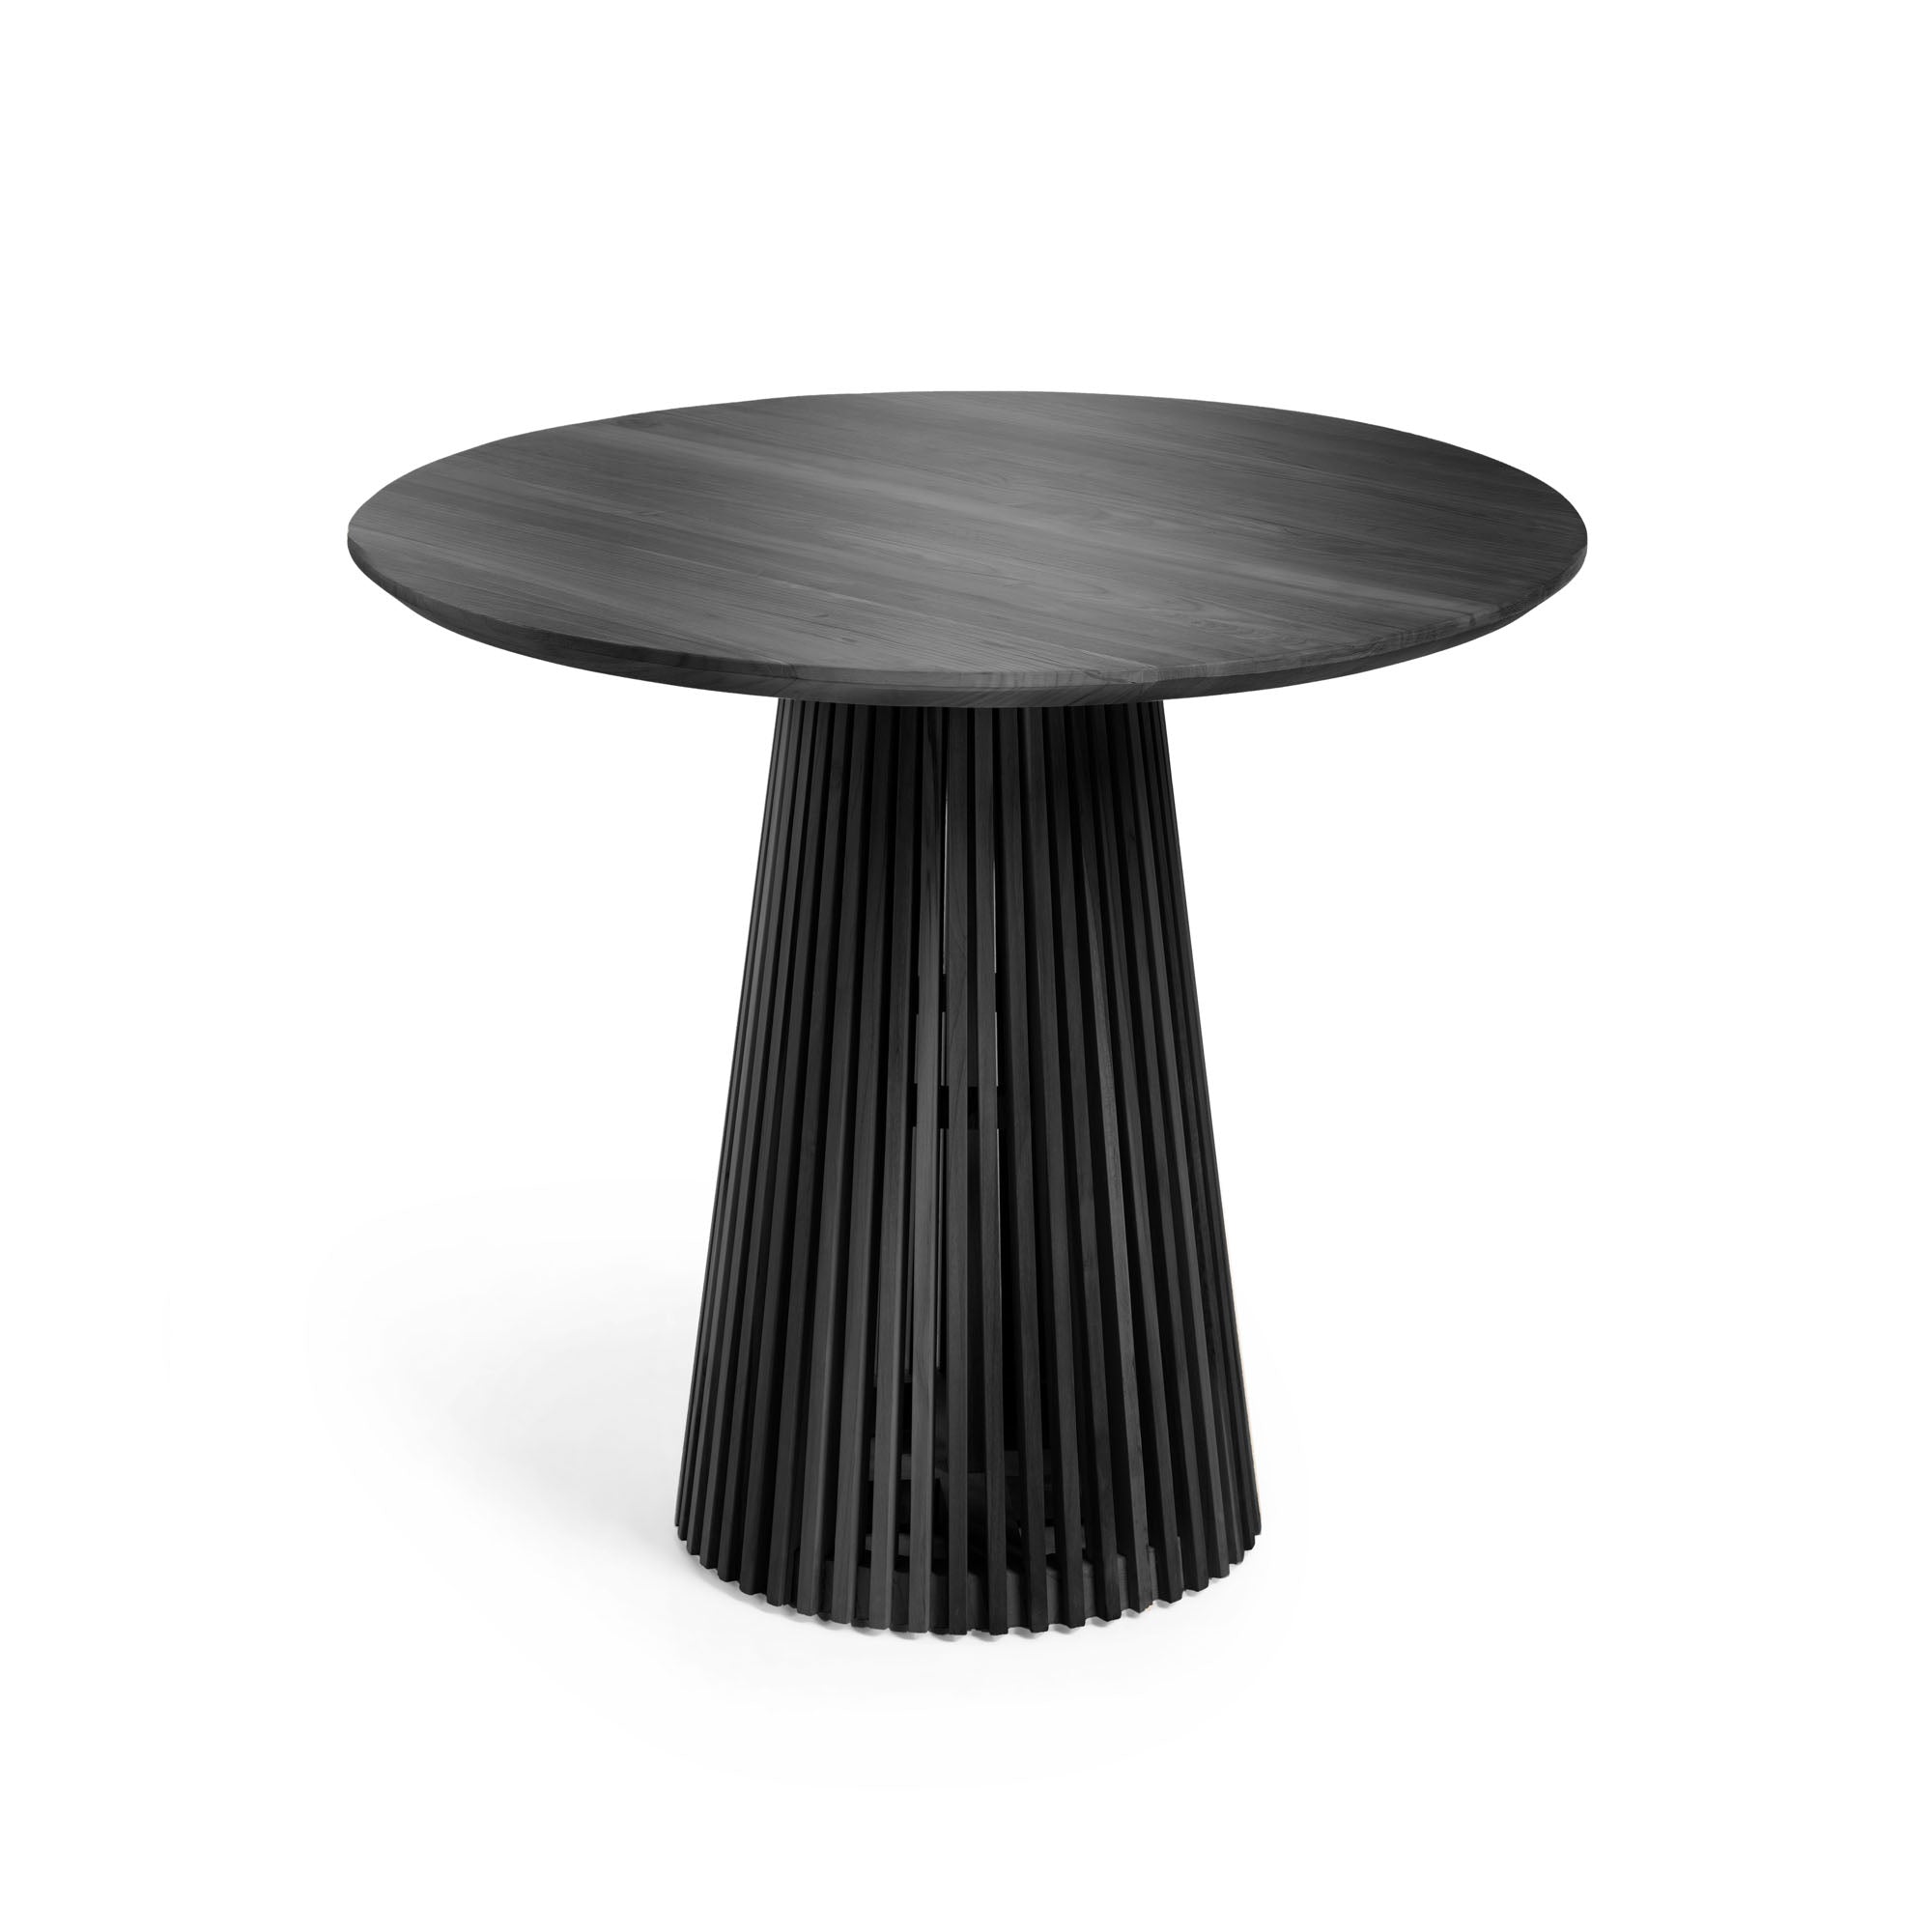 Jeanette kerek tömör fehér cédrusfa asztal, fekete színben, Ø 90 cm